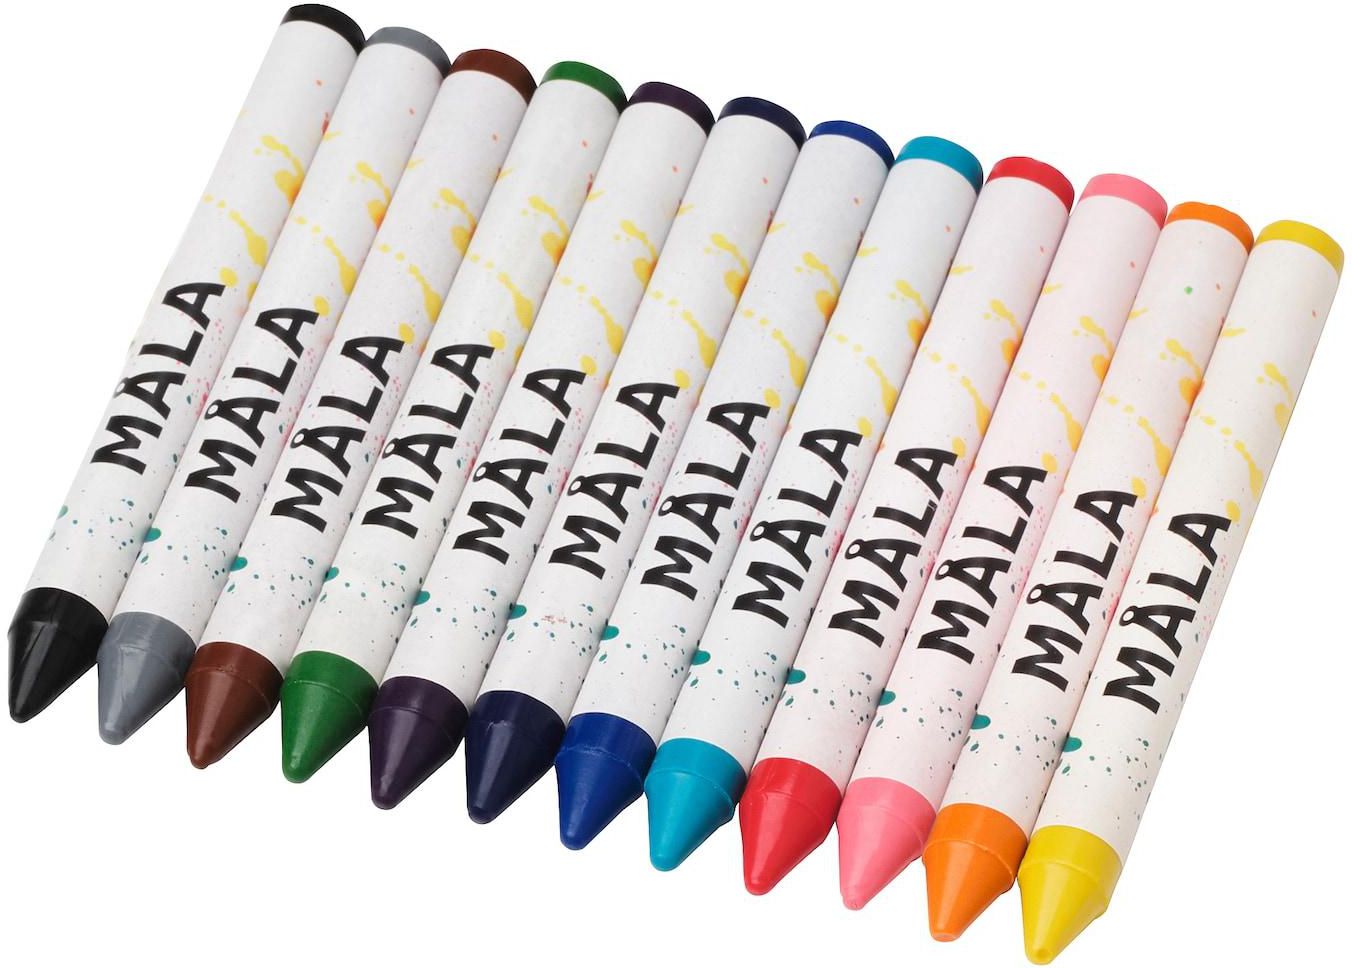 MÅLA قلم شمع - ألوان منوعة